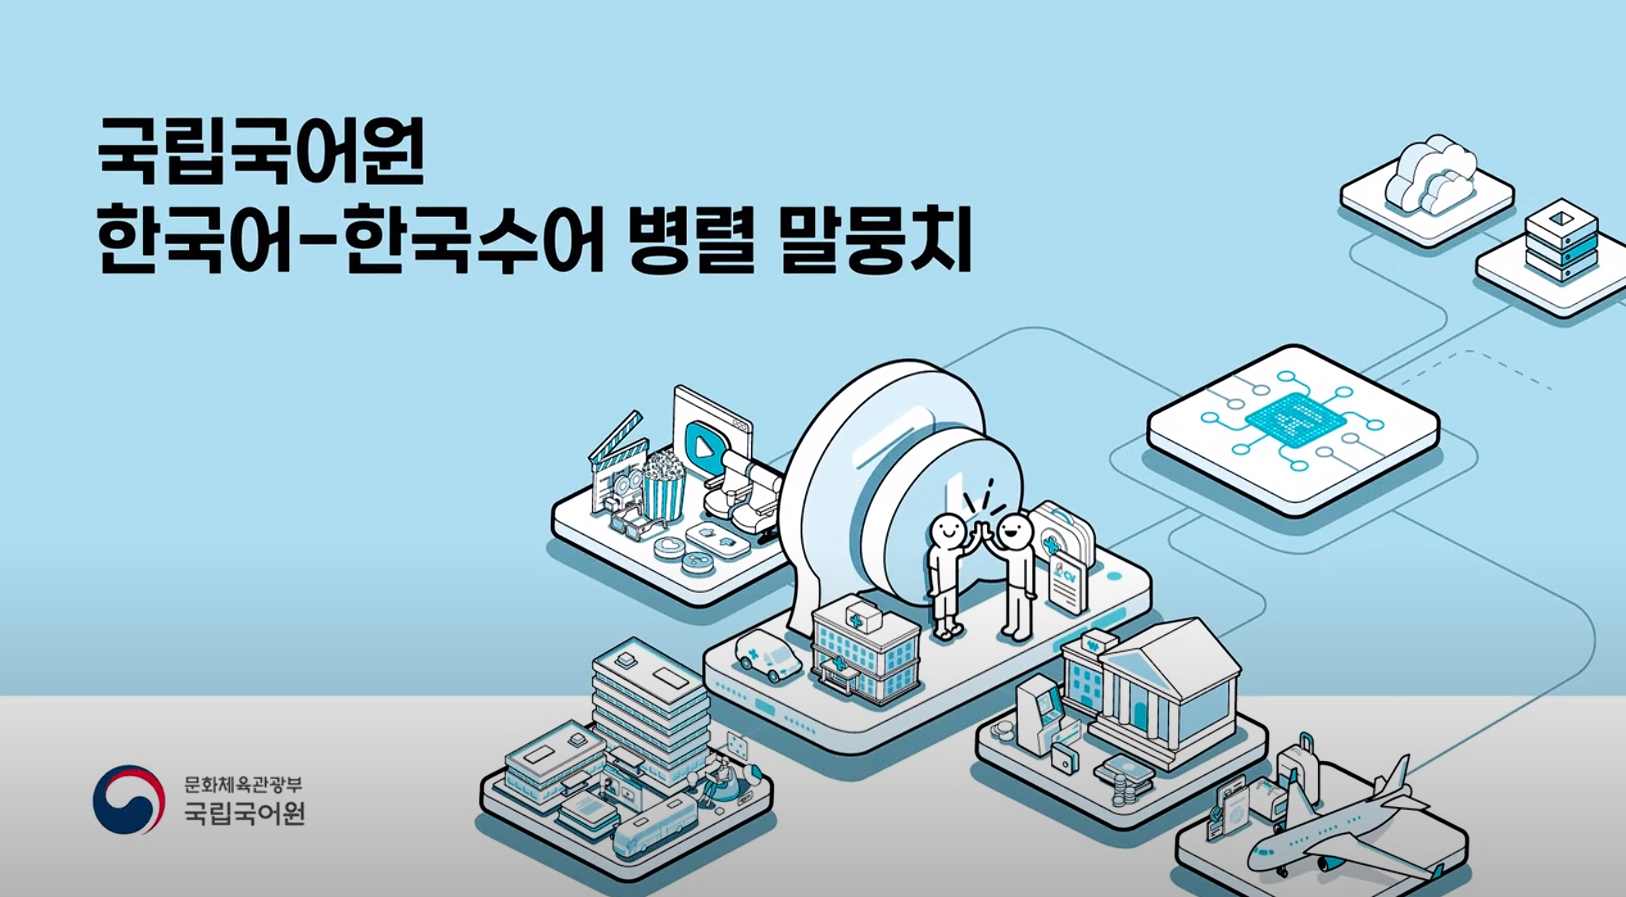 국립국어원 '한국어-한국수어 병렬 말뭉치'를 소개합니다!